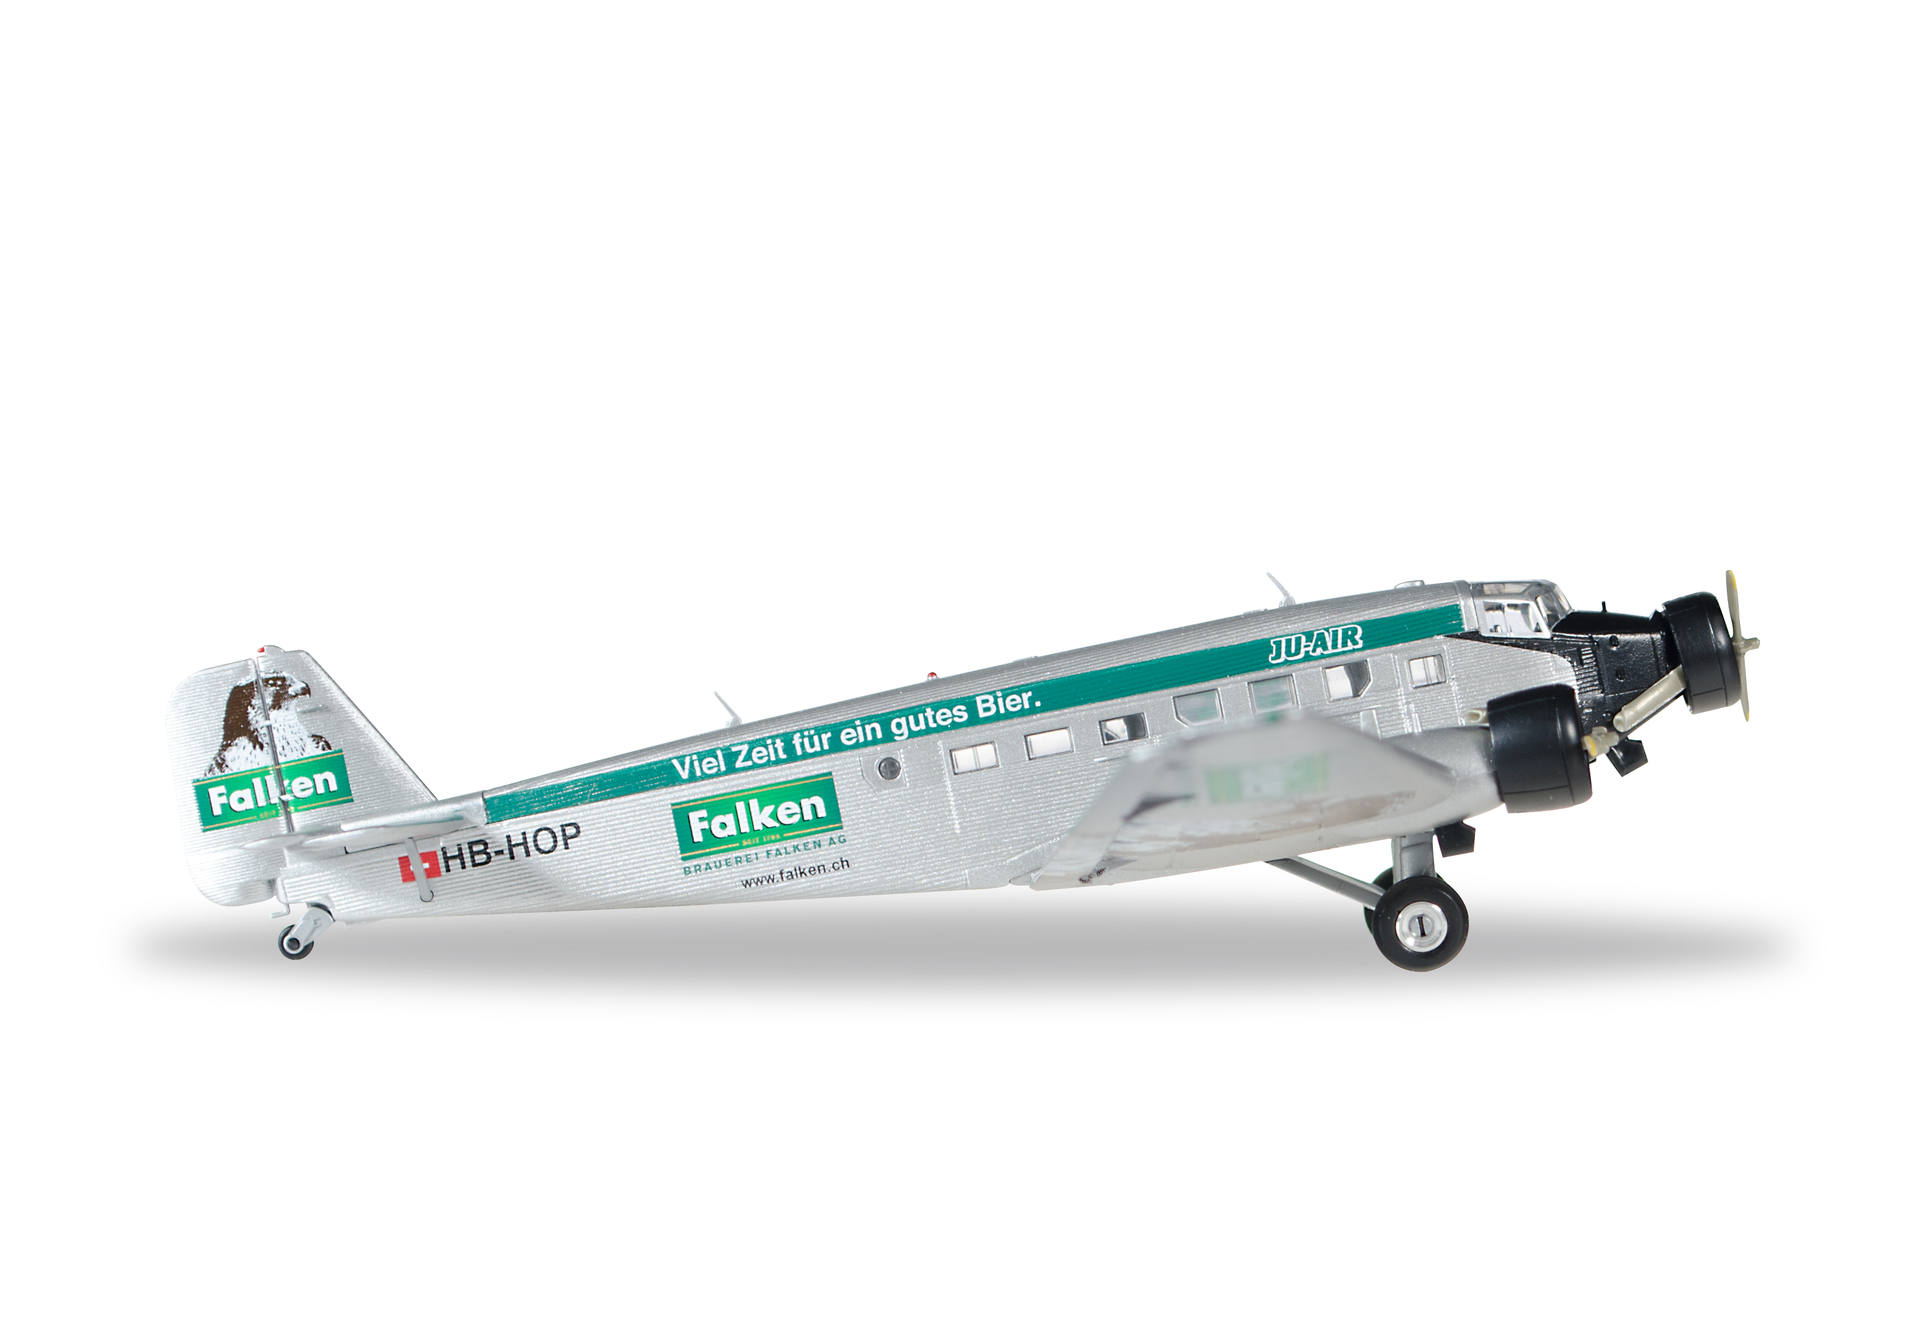 Ju-Air Junkers Ju-52 "Brauerei Falken" – HB-HOP